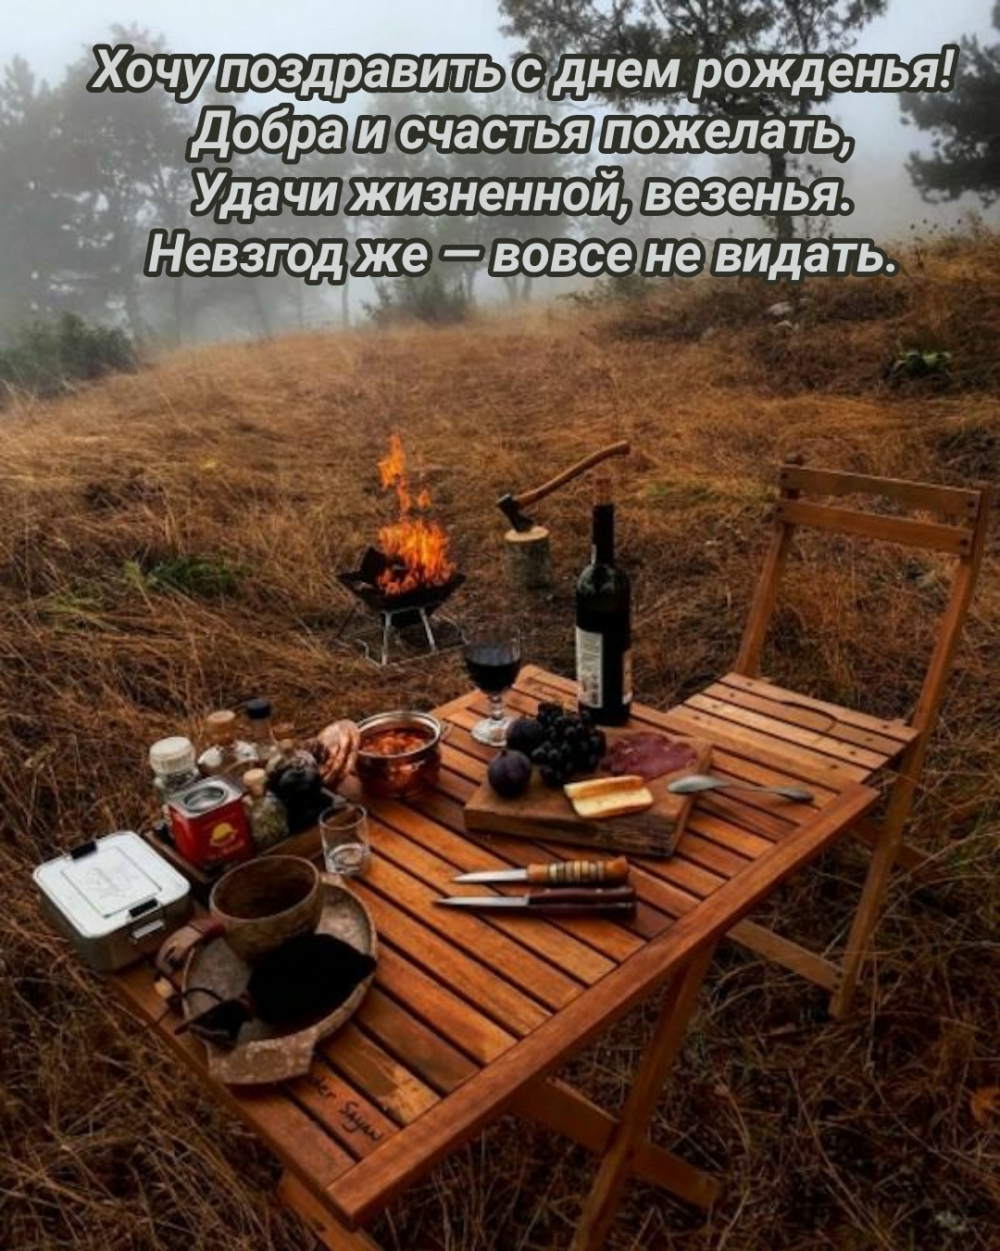 imagetext_ru_26129.jpg